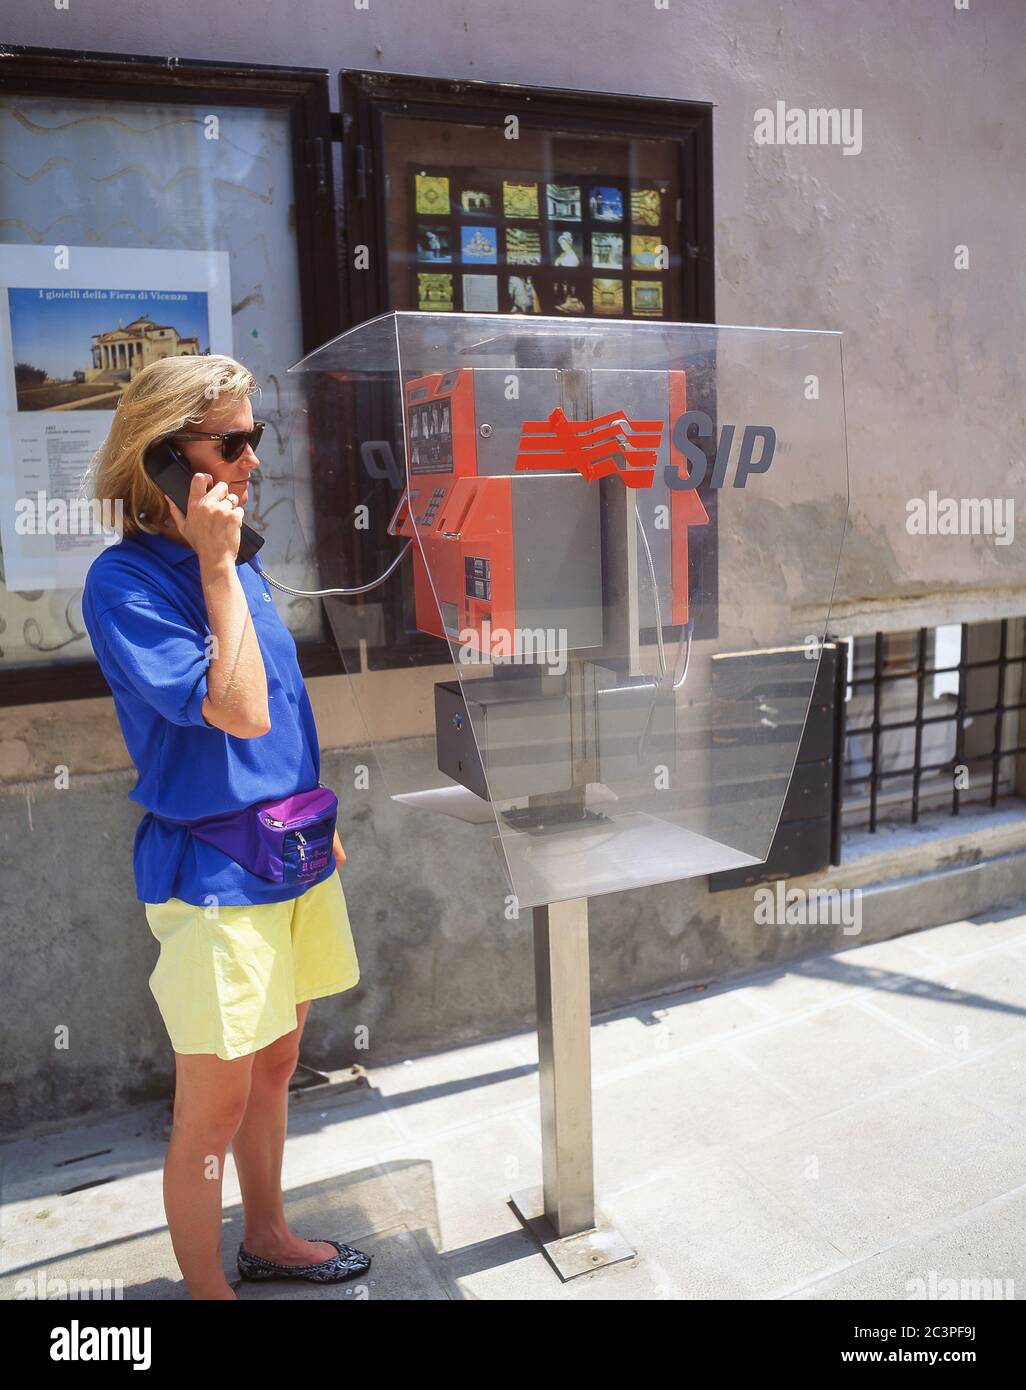 Young tourist woman using pay phone, Venice (Venezia), Veneto Region, Italy Stock Photo